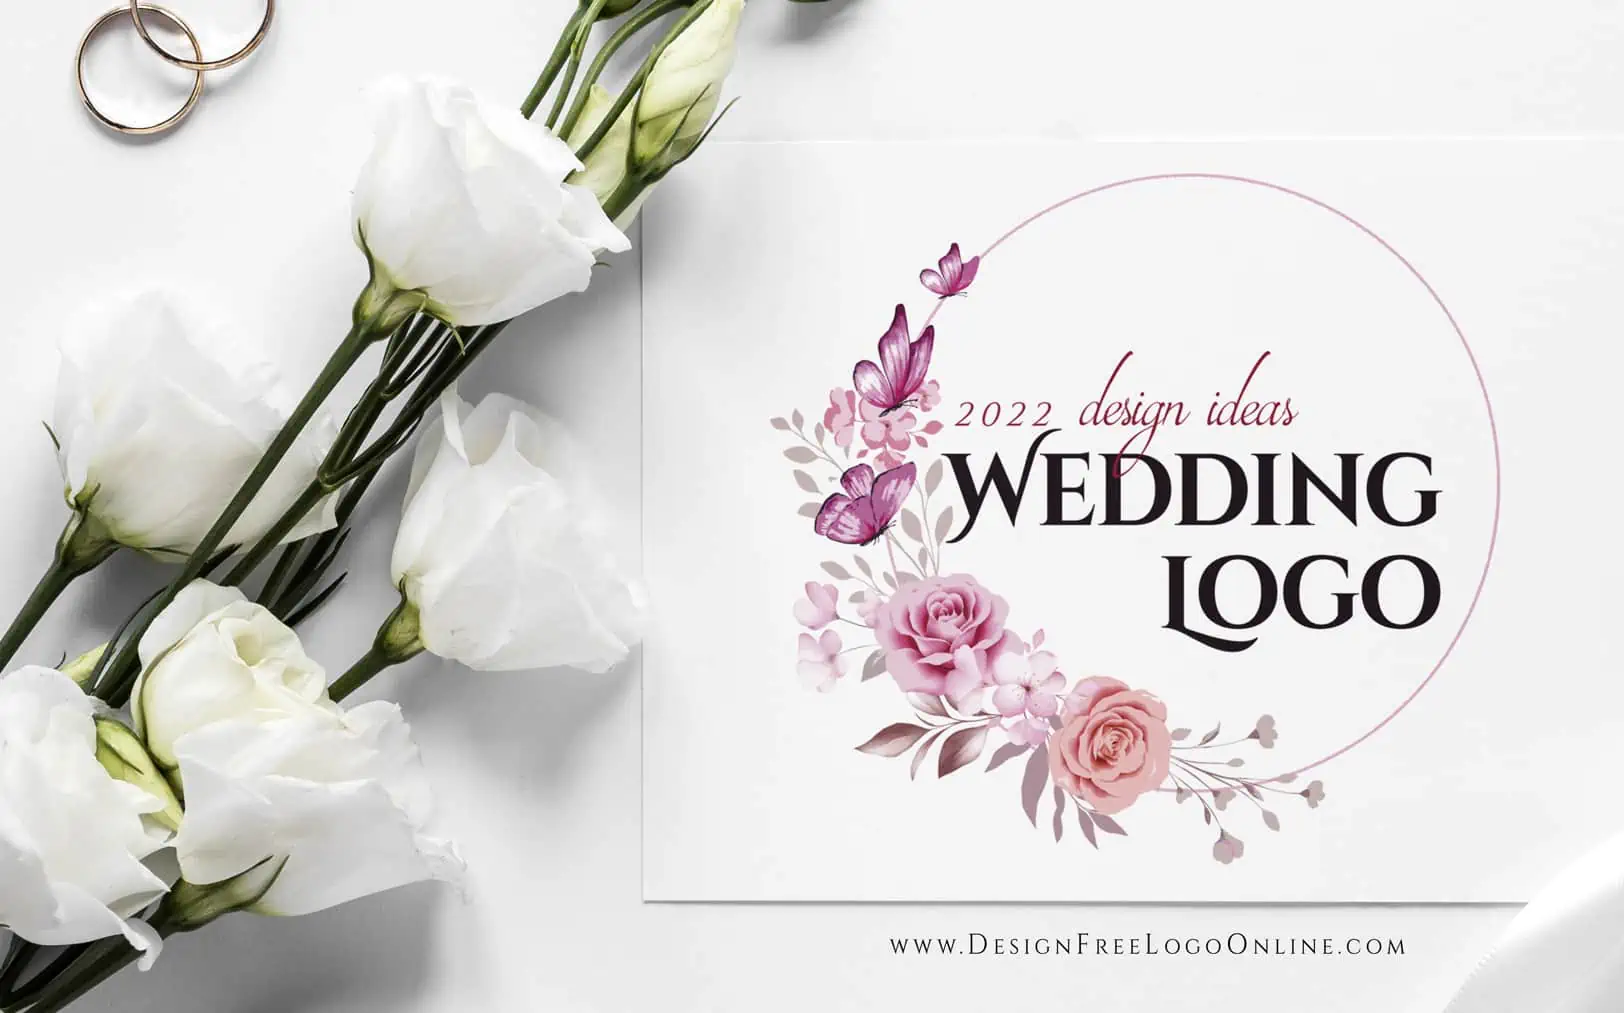 הרעיונות הטובים ביותר לעיצוב לוגו לחתונה לשנת 2022 - יוצר חתונות מונוגרמה